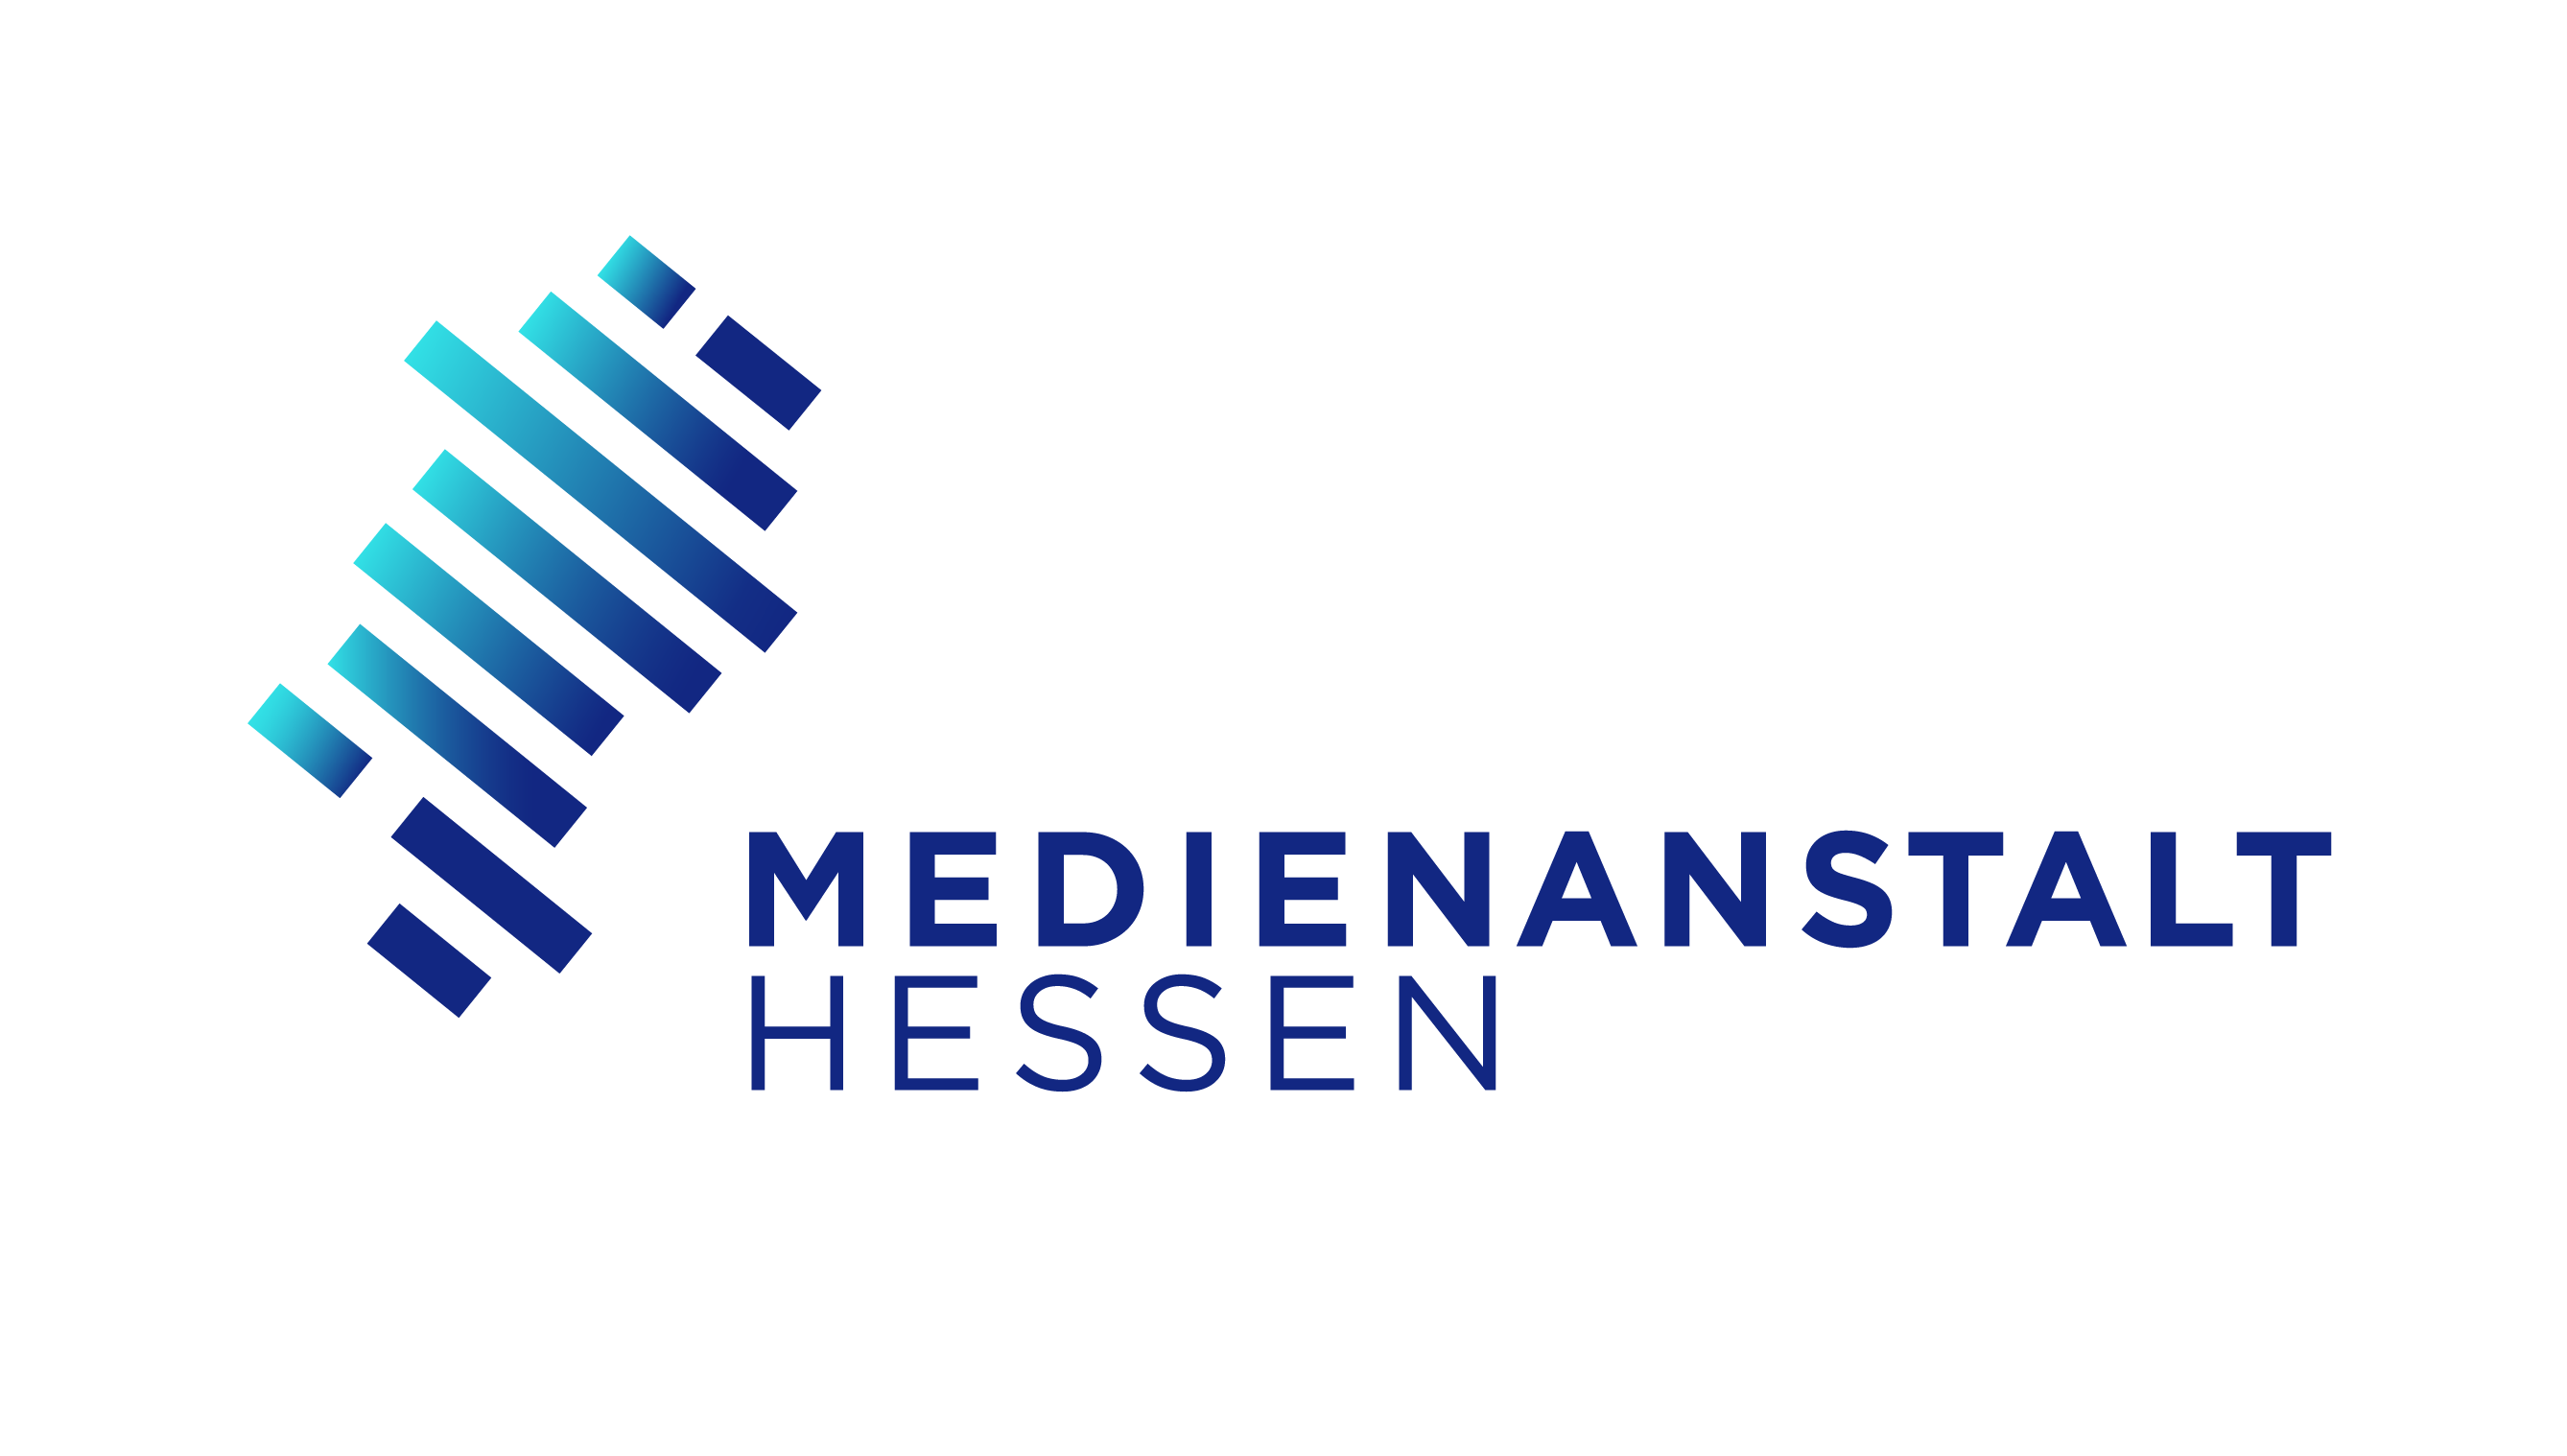 Medienanstalt Hessen - www.medienanstalt-hessen.de